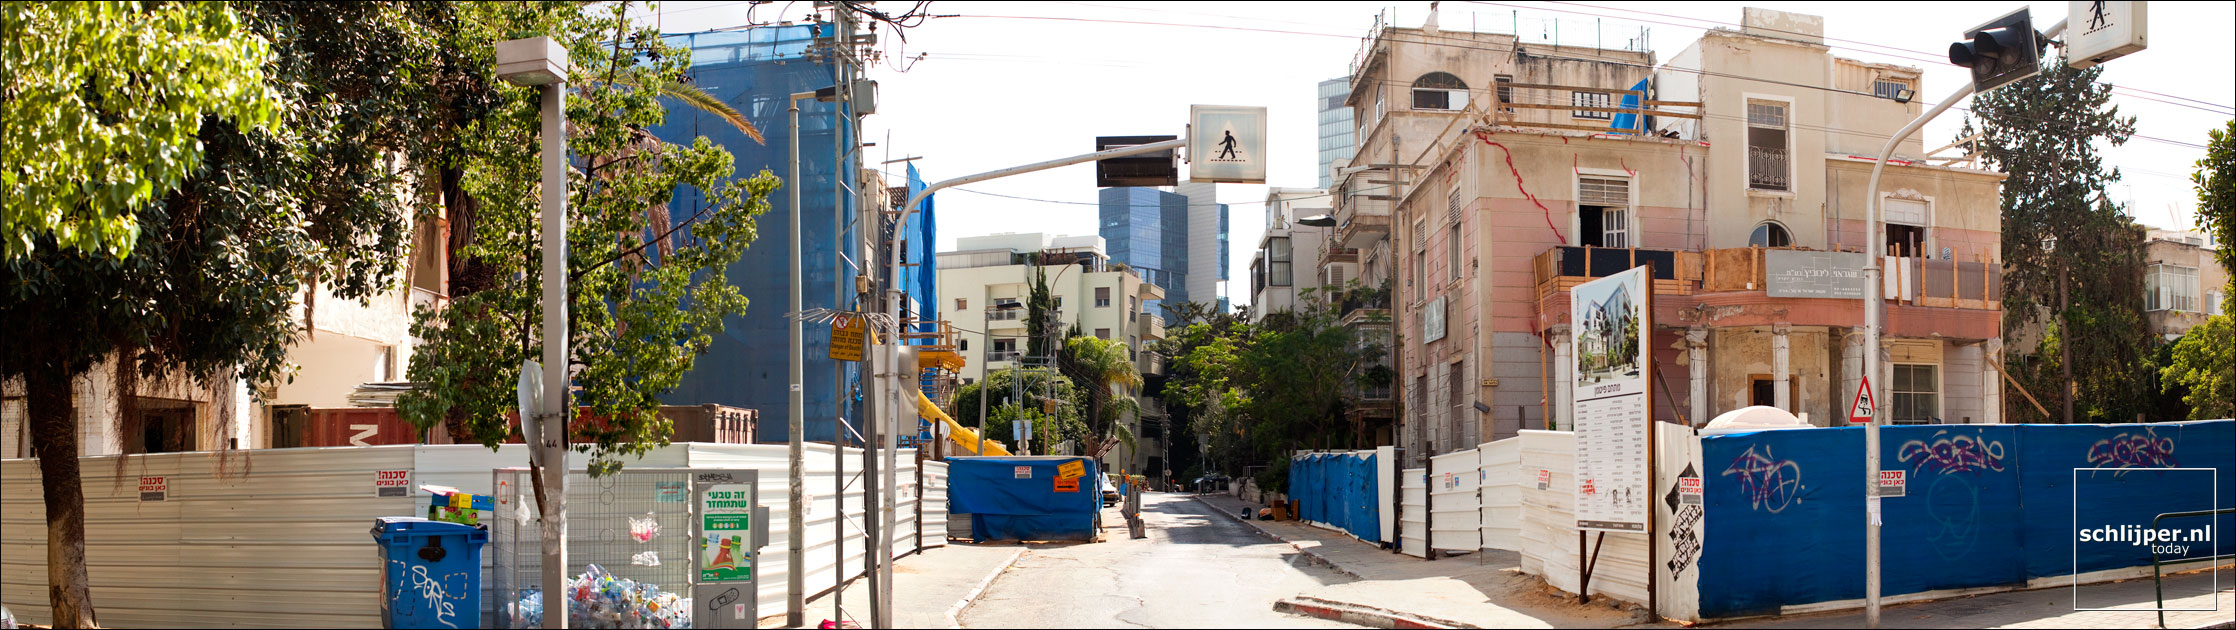 Israel, Tel Aviv, 30 september 2011